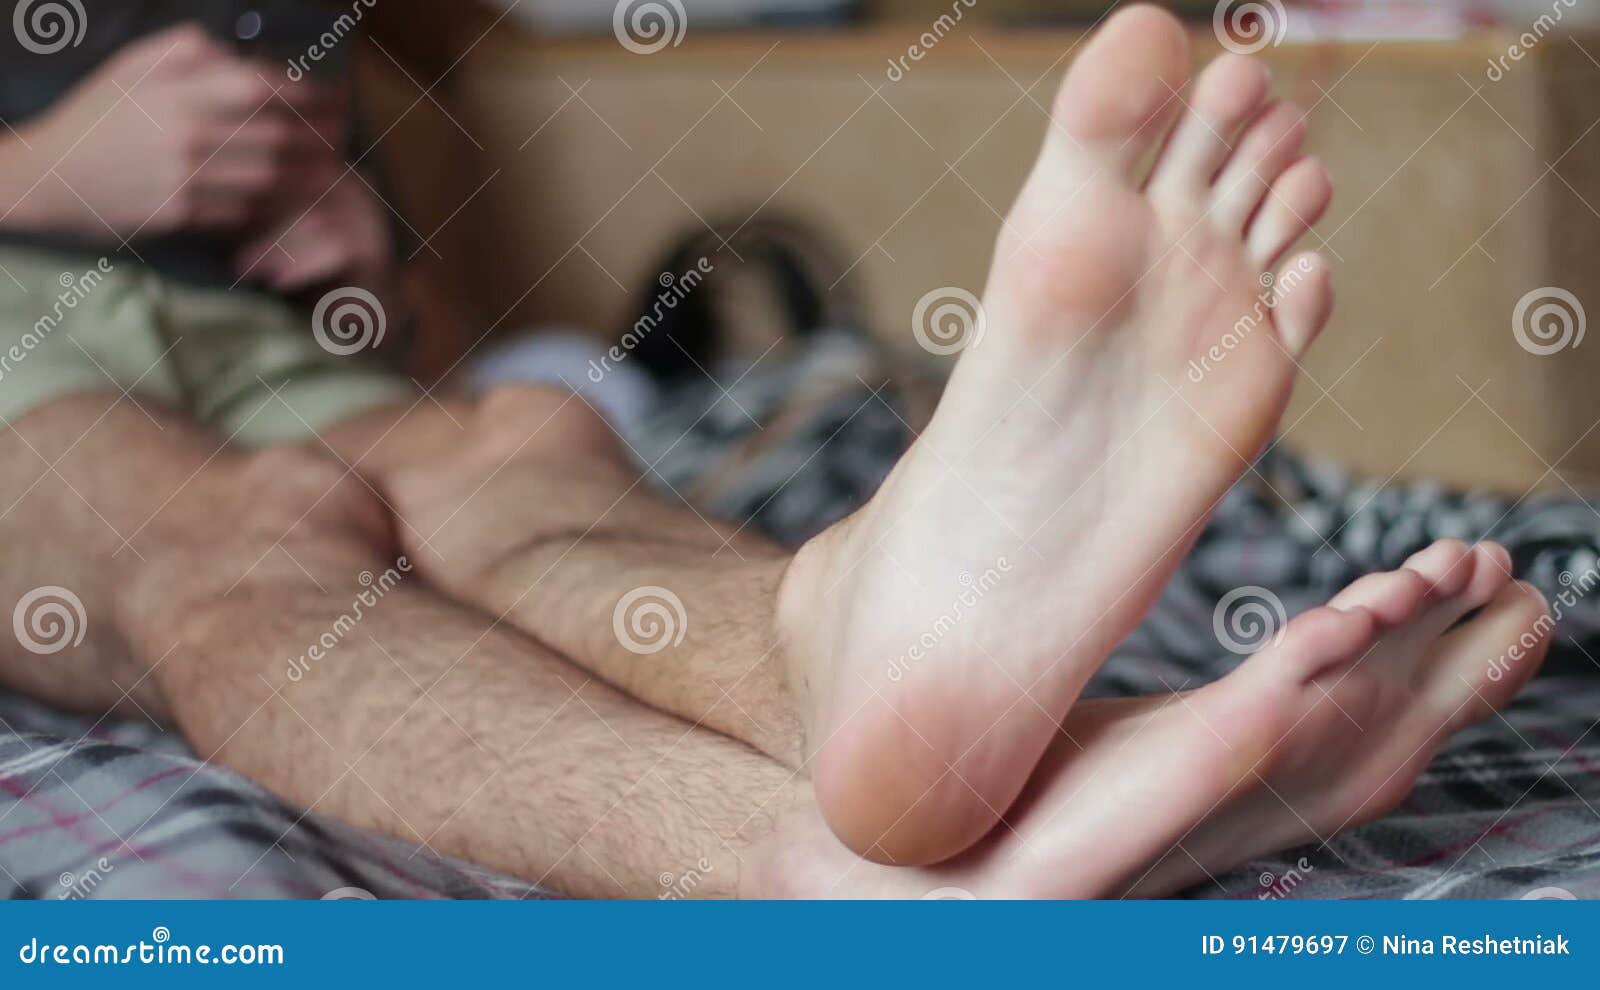 Мужчина лежит нога на ногу. Мужские ноги на кровати. Мужские ноги Наткровати. Босые ноги мужские. Ступни парней.